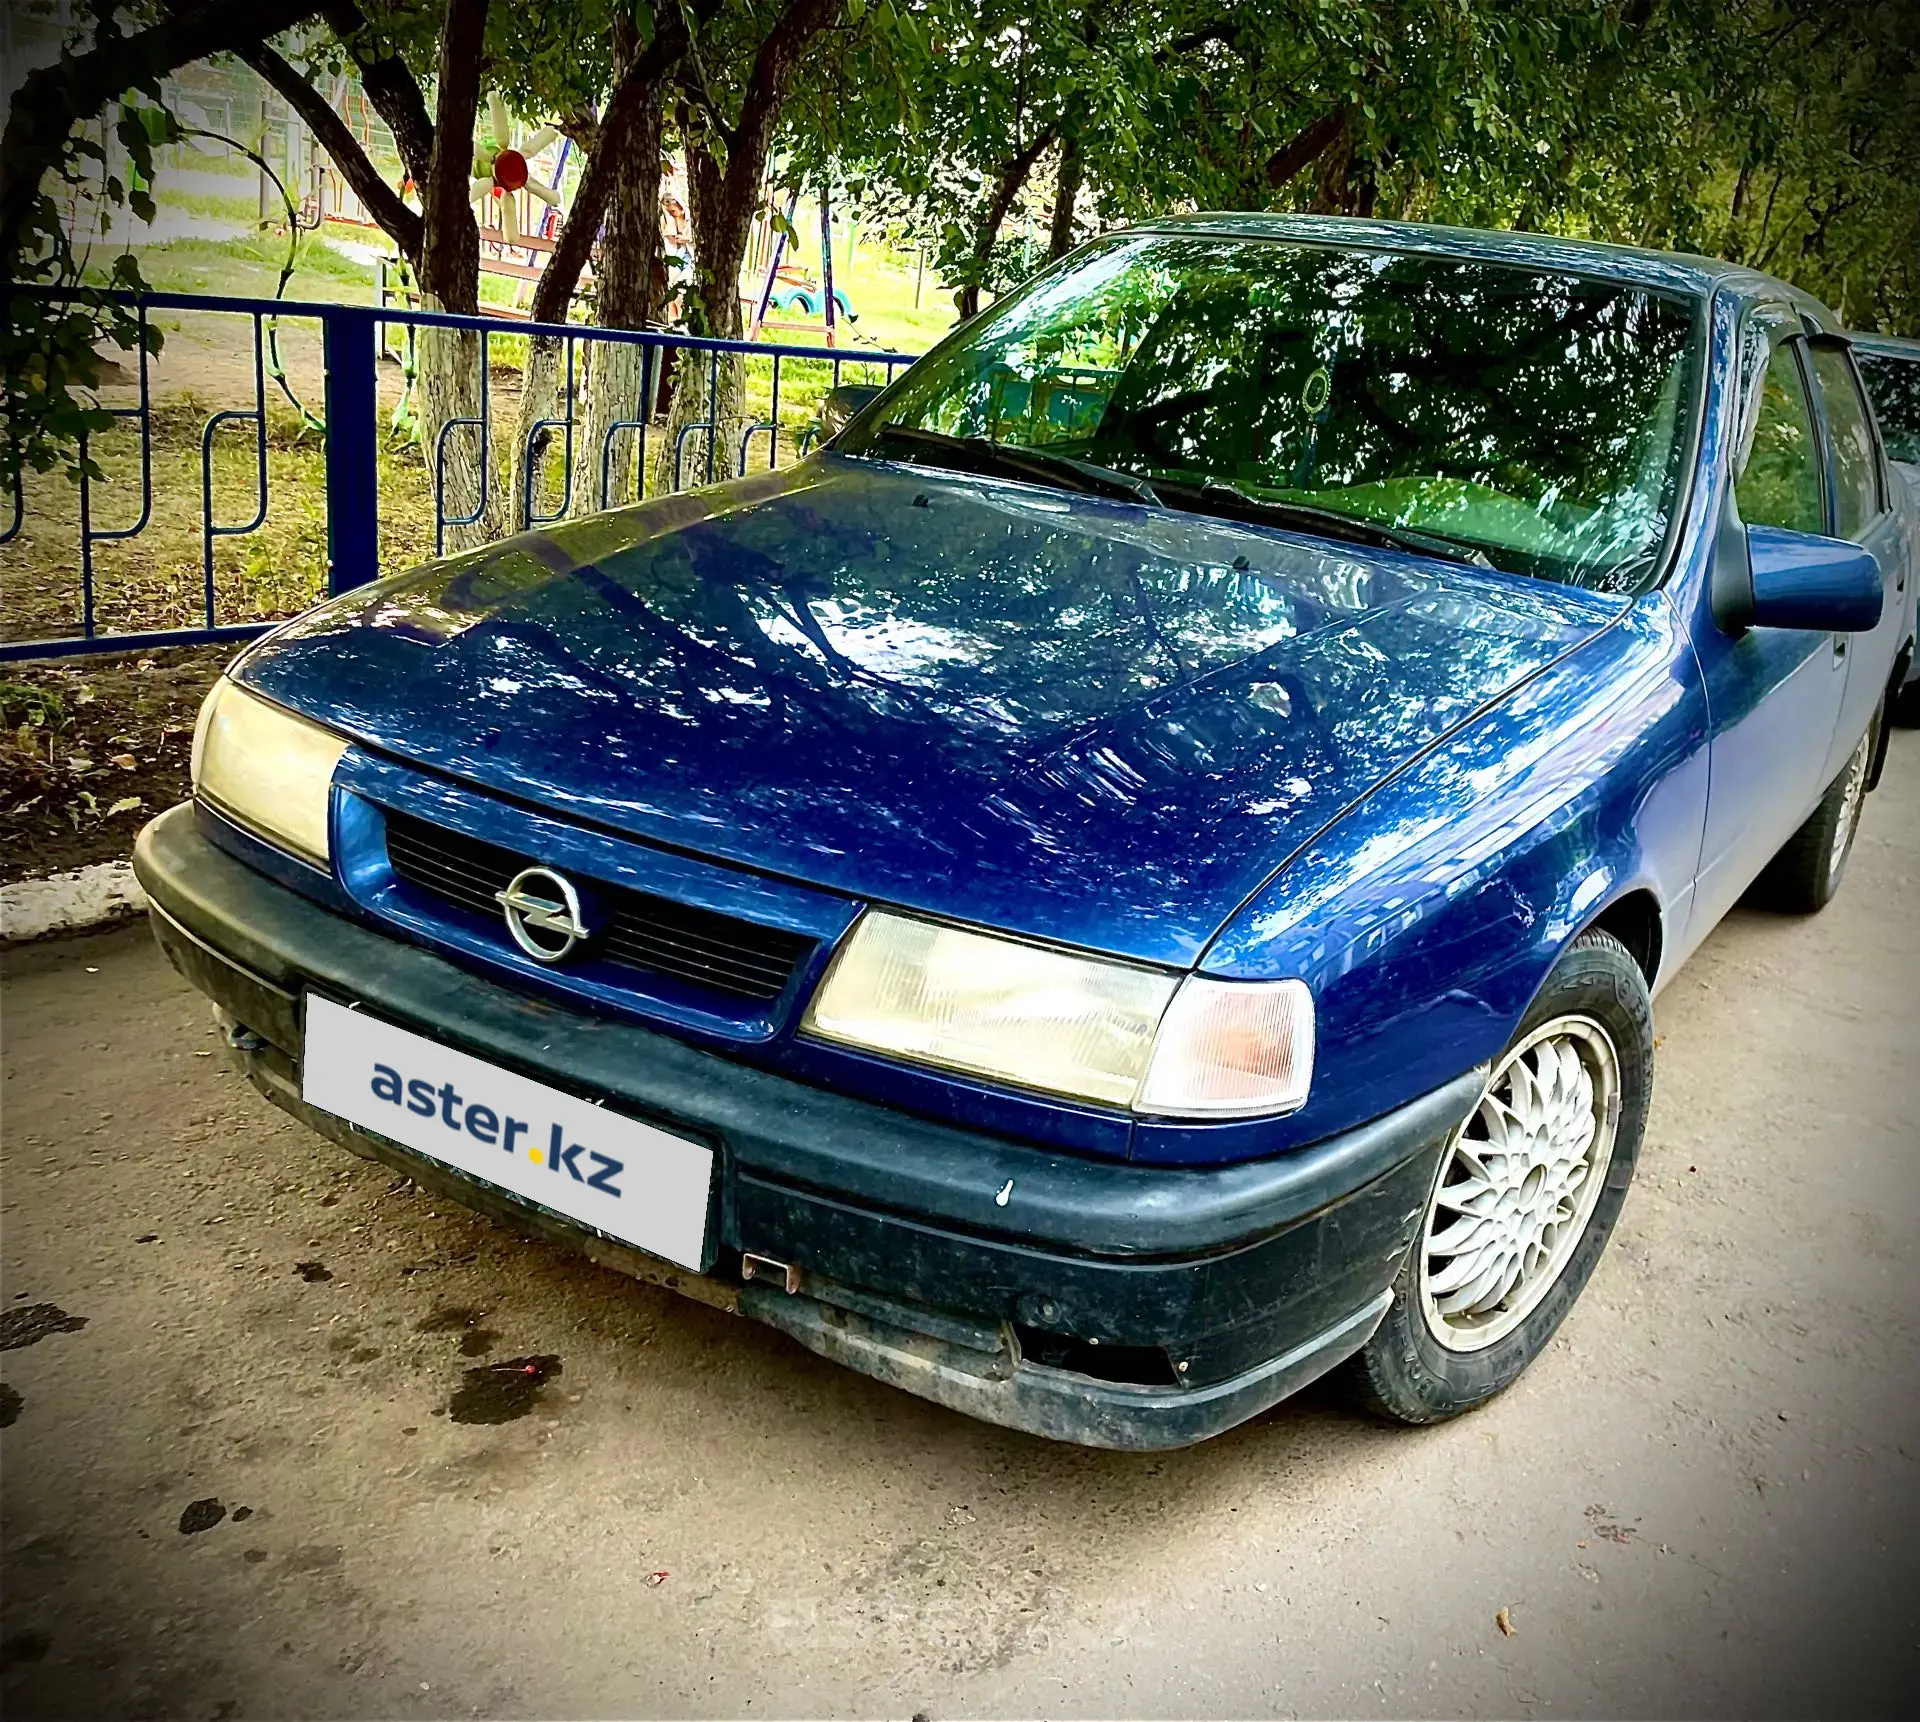 Opel Vectra 1992. Опель Вектра 1992. Опель Вектра 1992 года. Opel Vectra 1992 балка задняя. Opel 1992